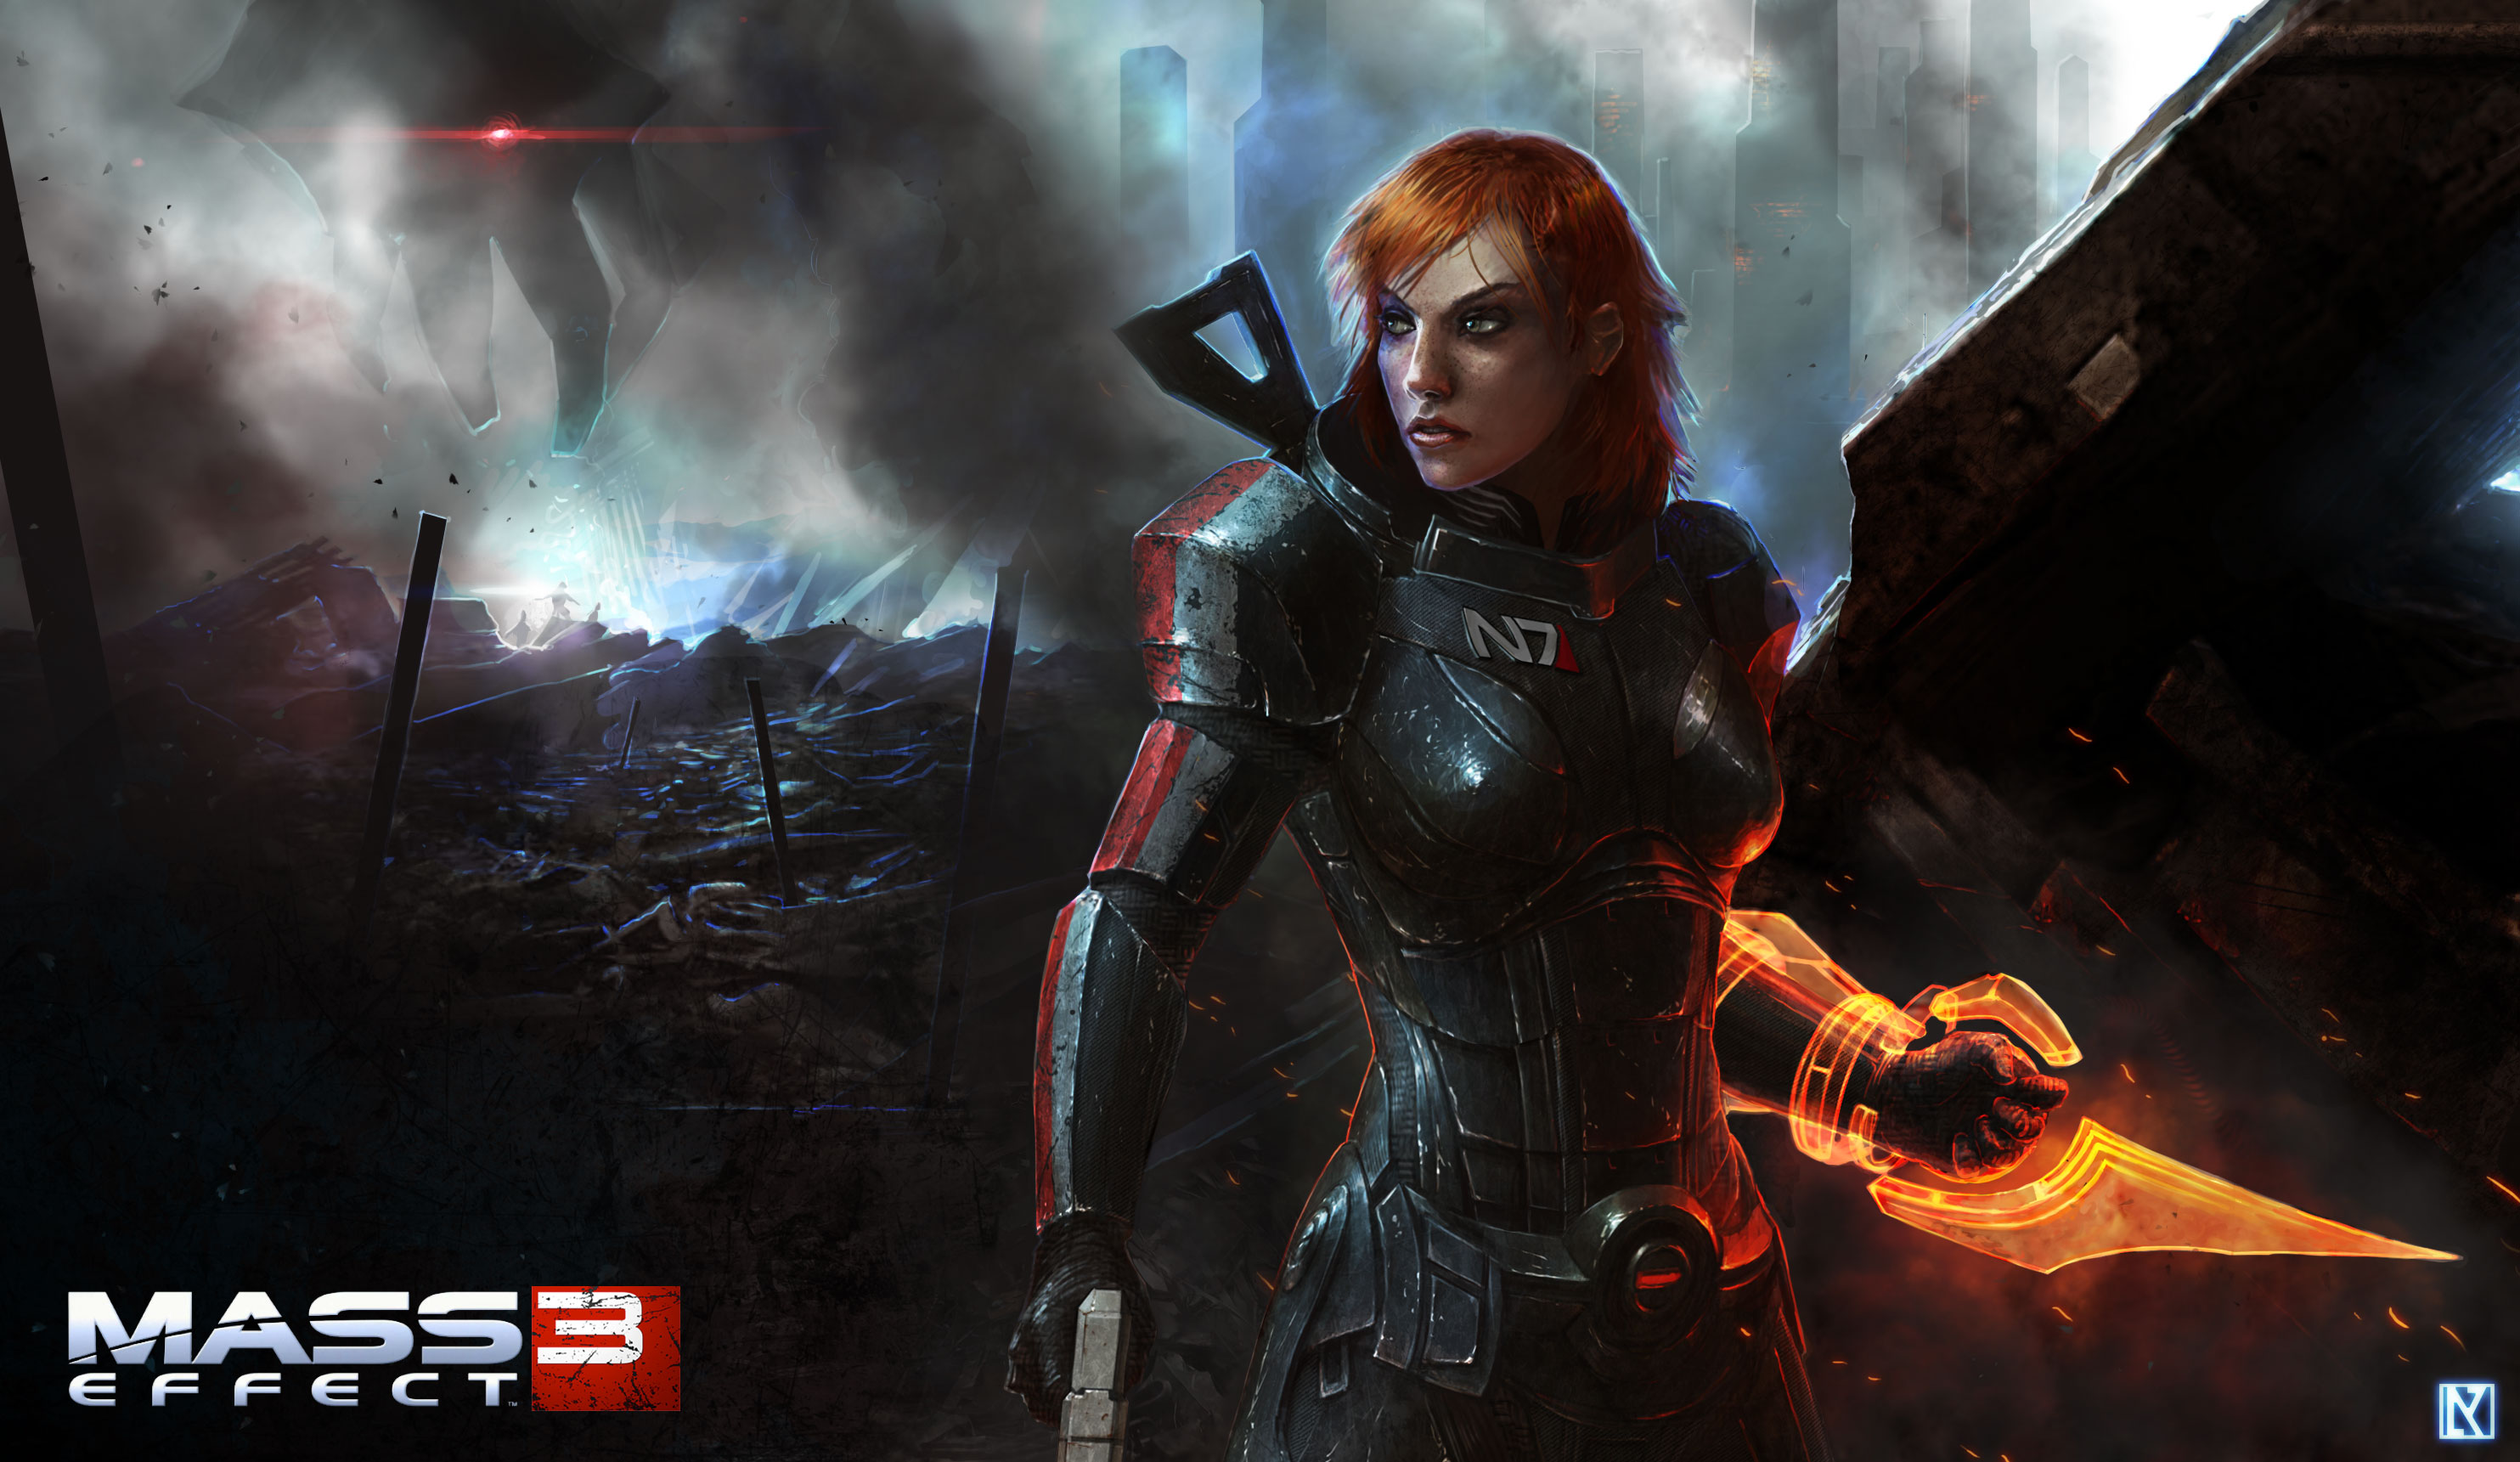 Mass Effect 3: Commander Shepard Promotional Art